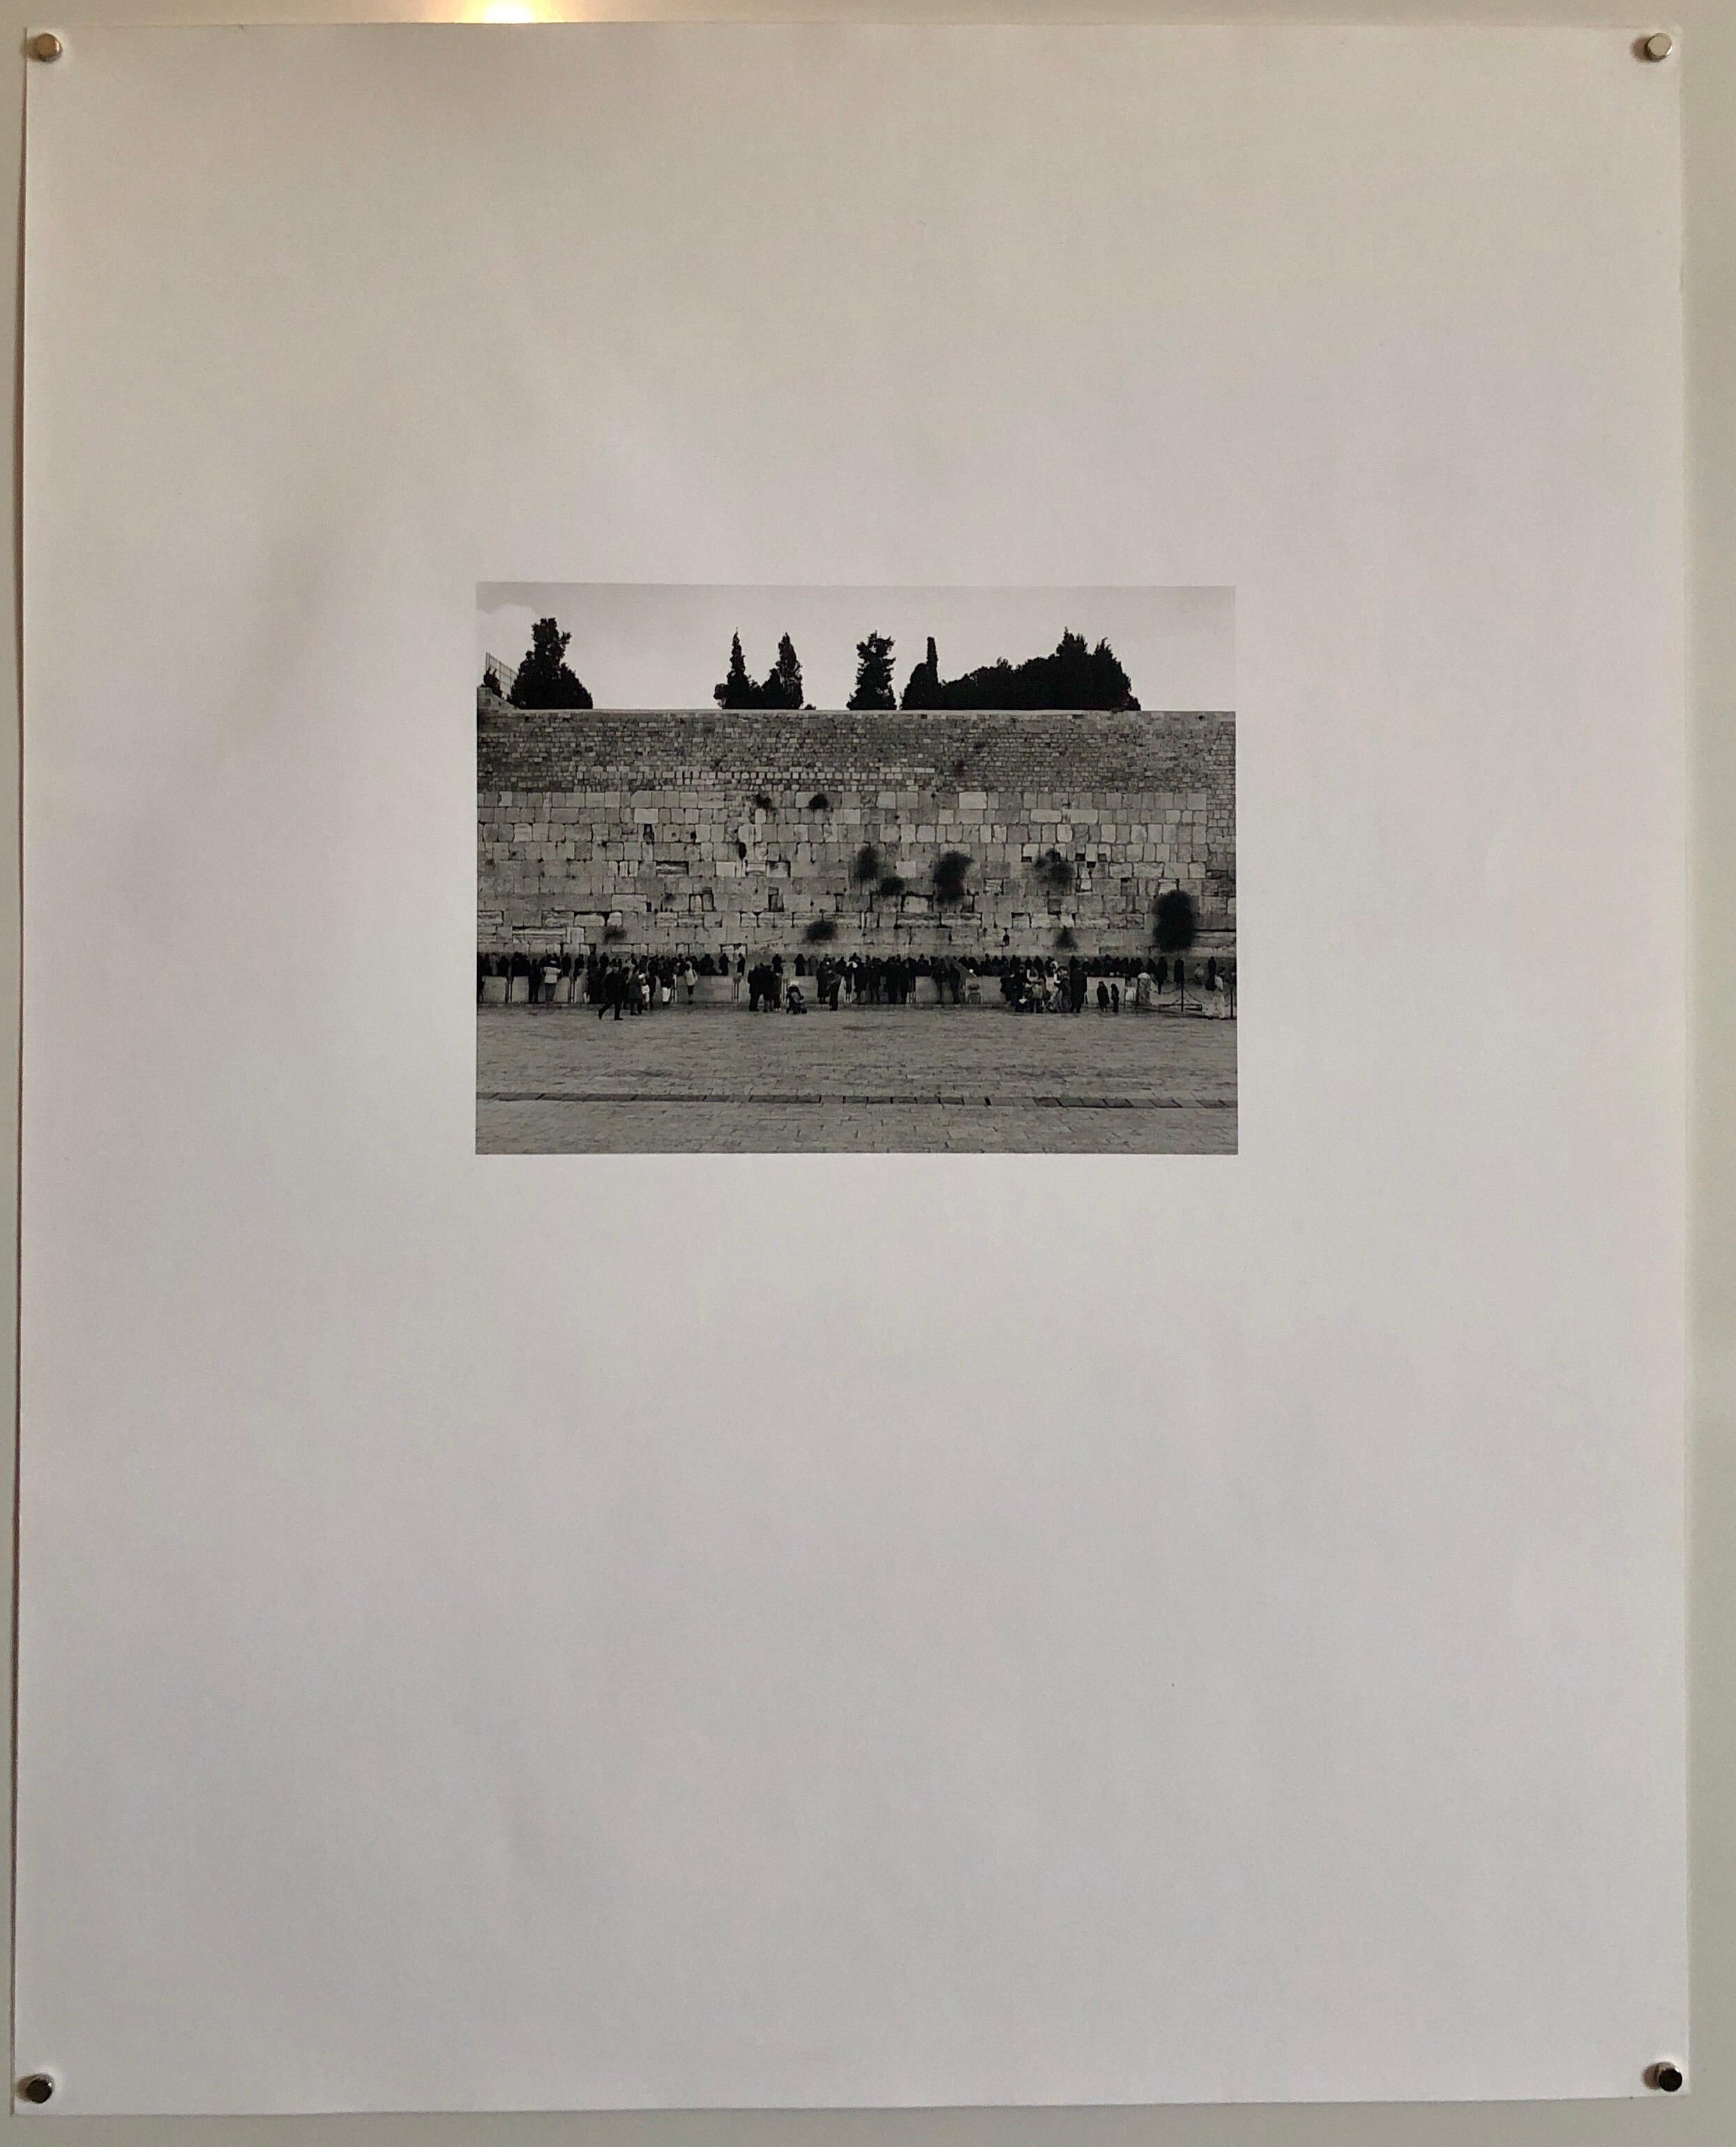 Photo prise en noir et blanc du Mur occidental (Mur des Lamentations) Kotel Hamaaravi à Jérusalem Israël. Signé à la main, daté et titré. Très petite édition de seulement 5 exemplaires.

Né à New York, Mikael Levin a grandi en Israël, aux États-Unis